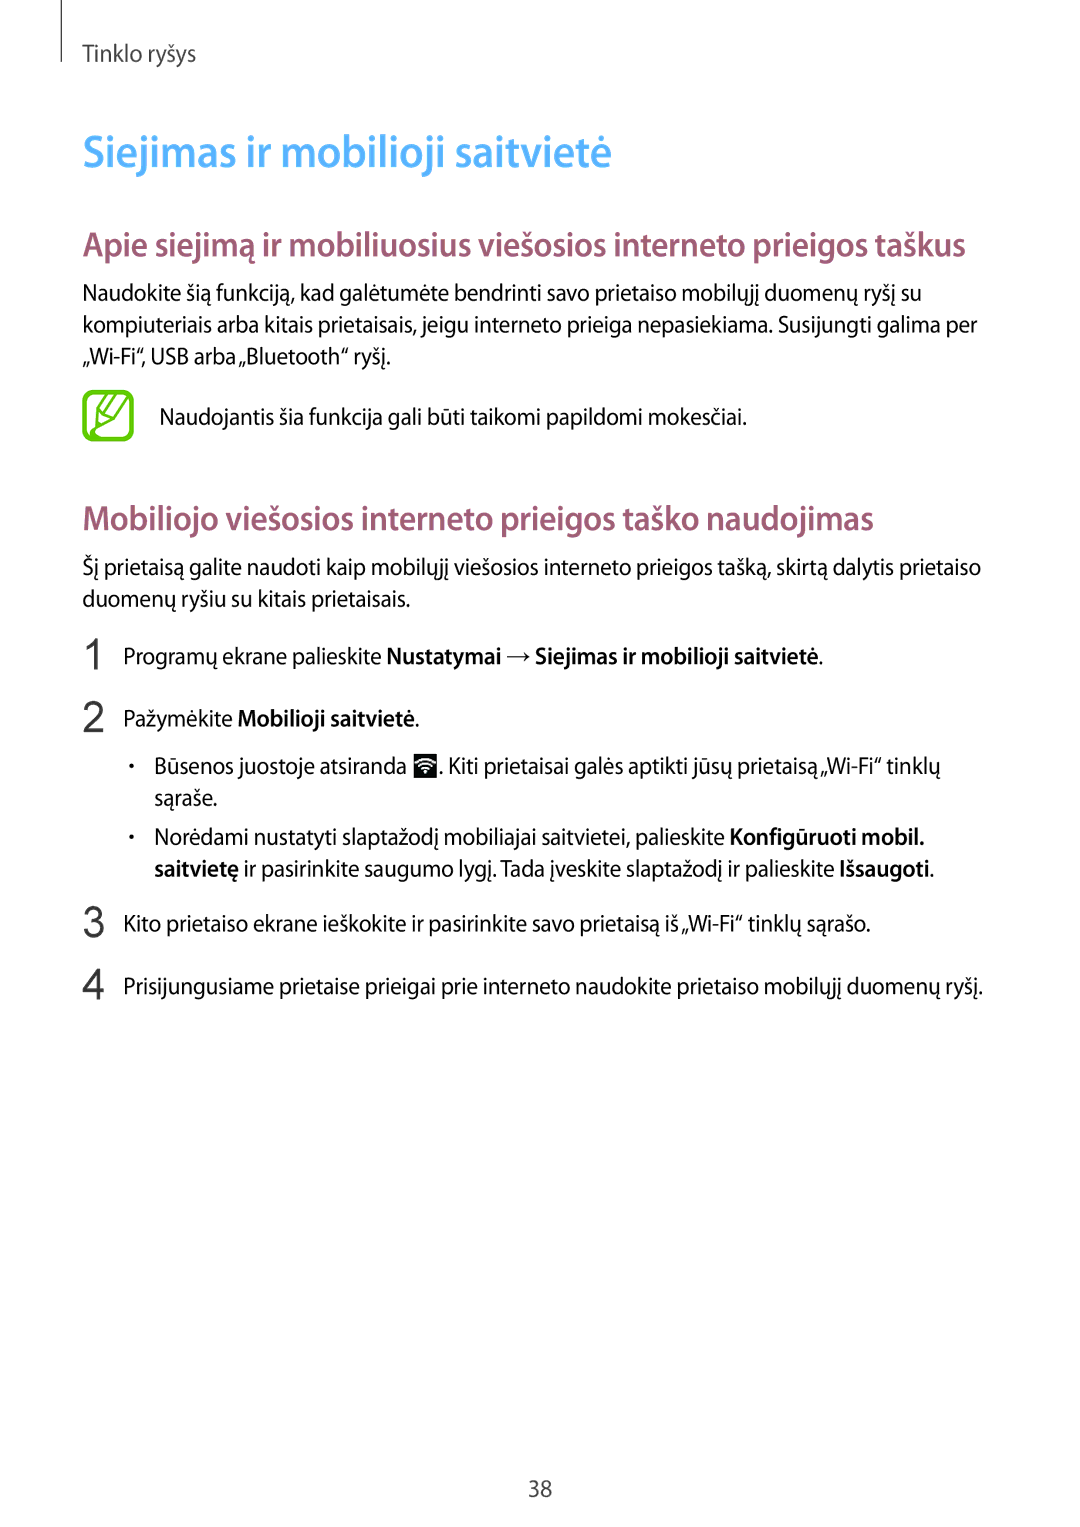 Samsung SM-G357FZAZSEB manual Siejimas ir mobilioji saitvietė, Mobiliojo viešosios interneto prieigos taško naudojimas 